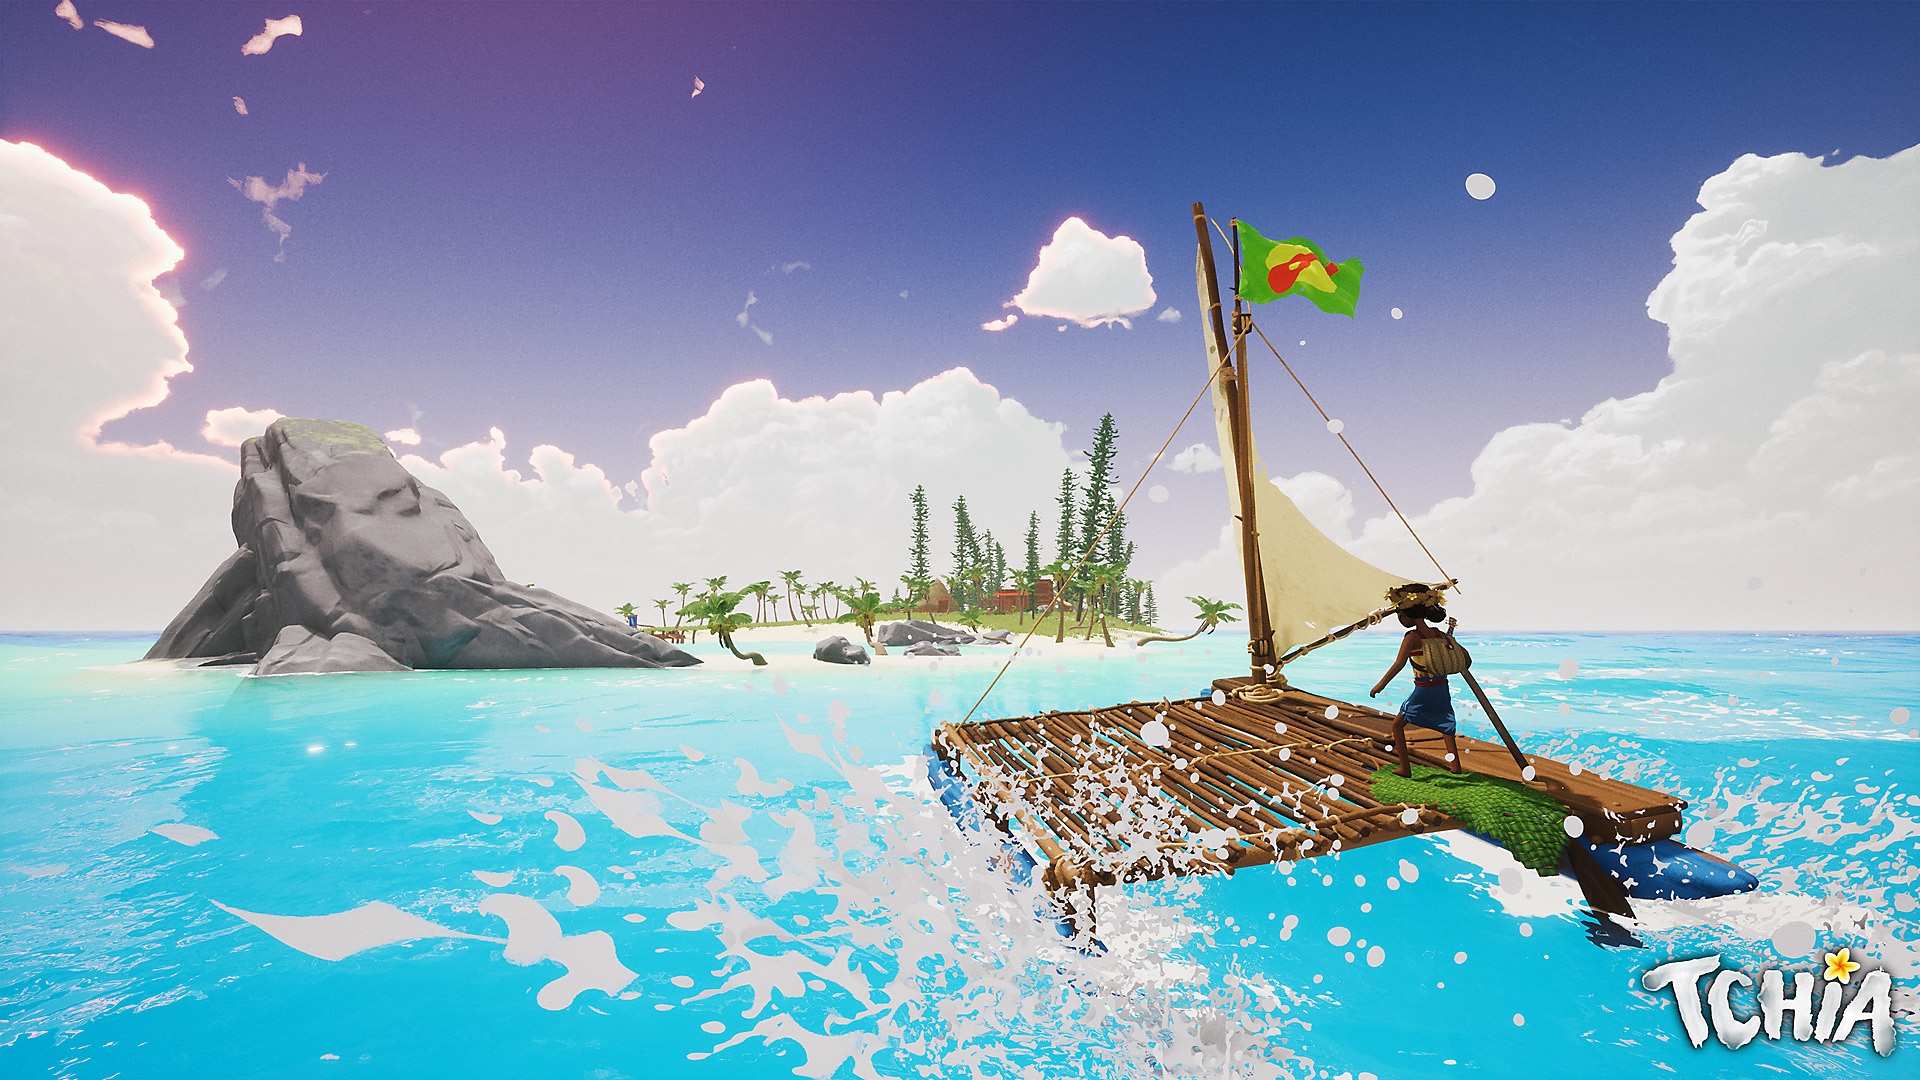 Tchia – снимок экрана, на котором главный герой плывет на плоту к острову